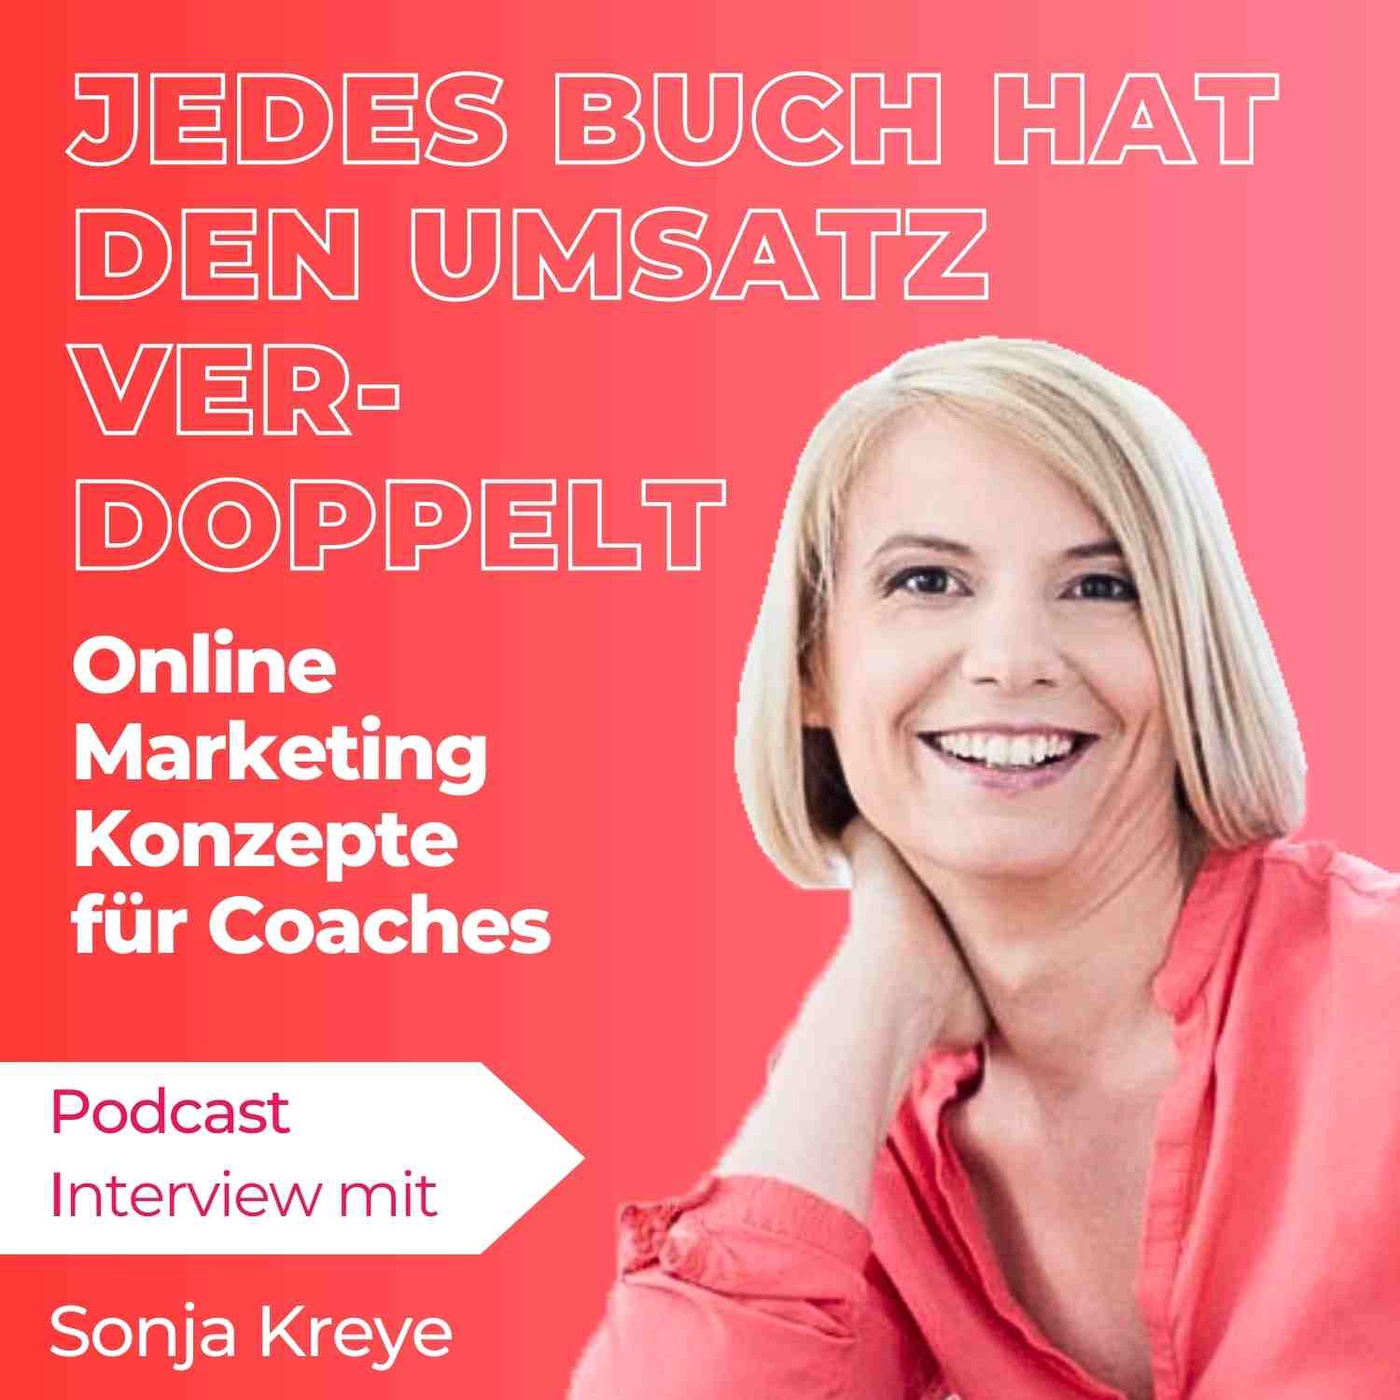 Online Marketing Konzepte von Sonja Kreye: Mit jedem Buch den Umsatz verdoppeln